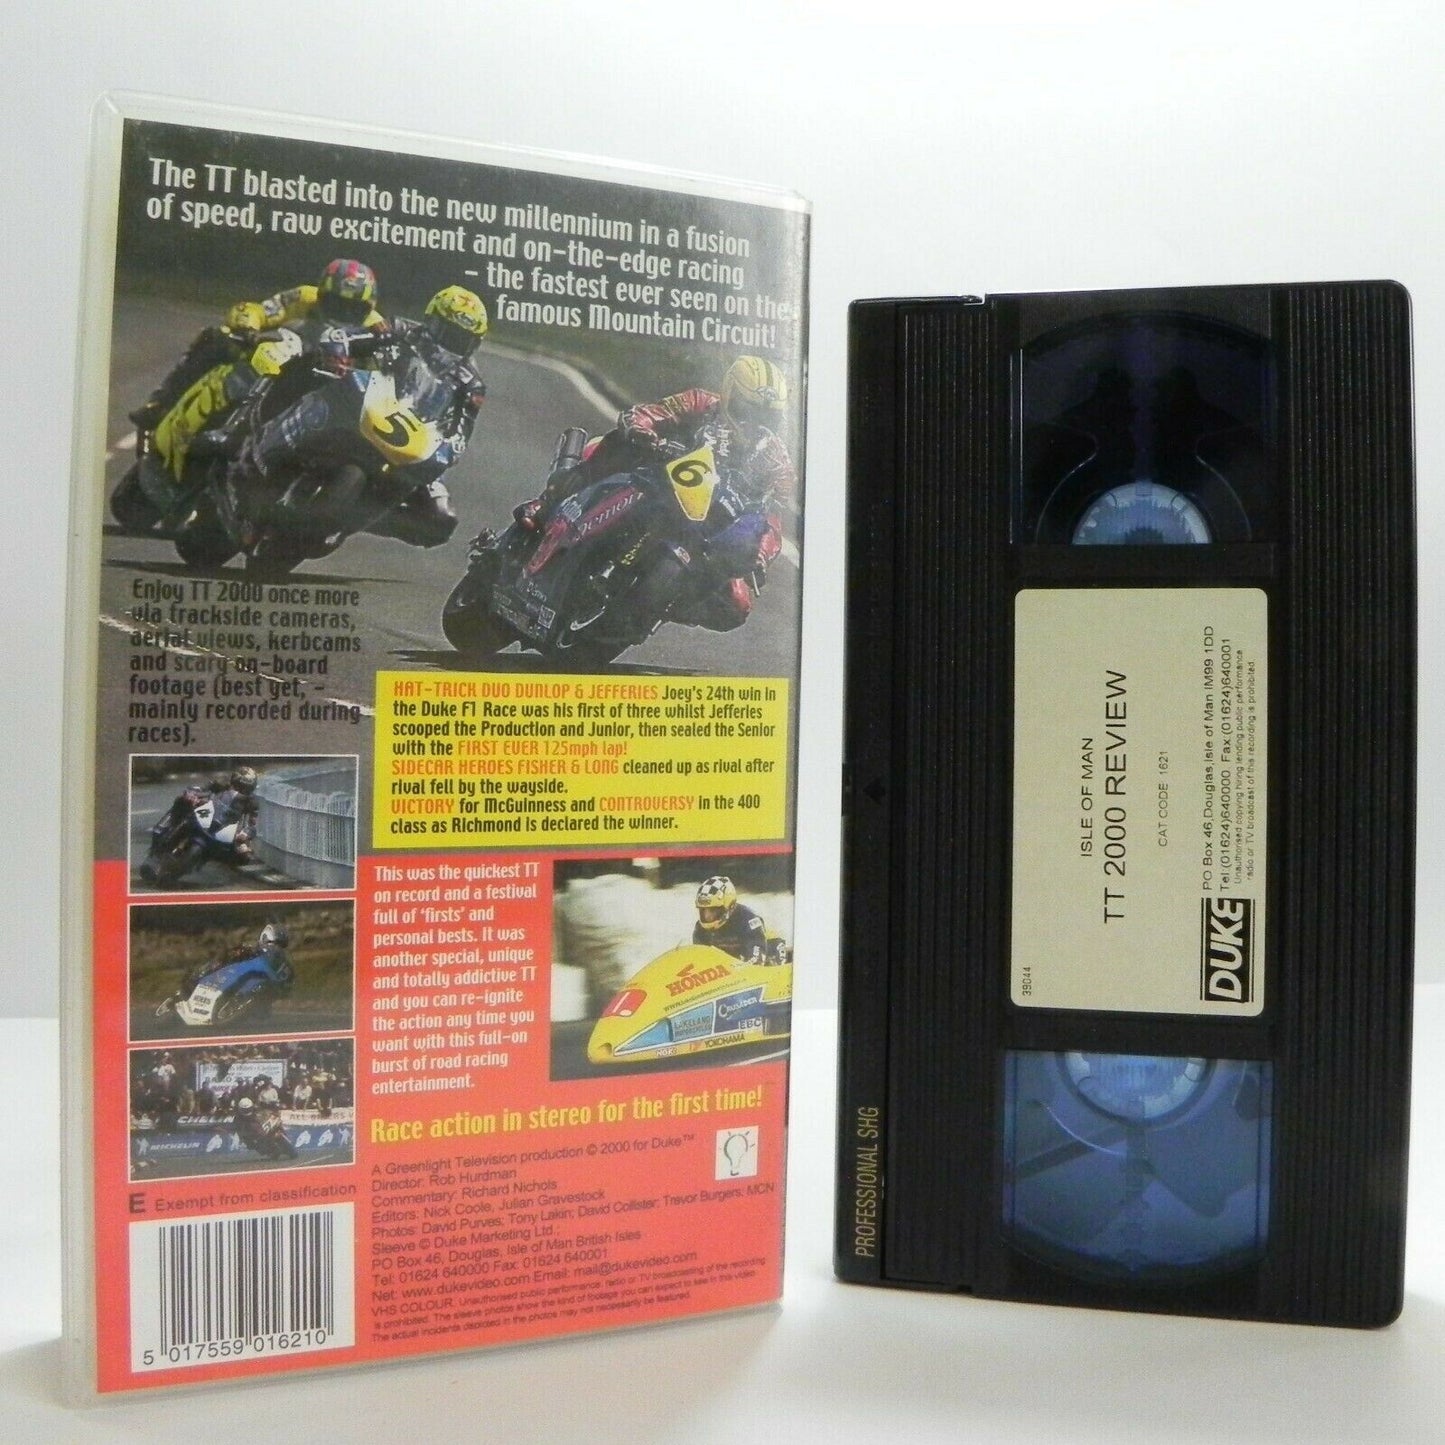 TT Isle Of Man 2000: Racing - Dunlop - Jefferies - McGuinness - Pal VHS-